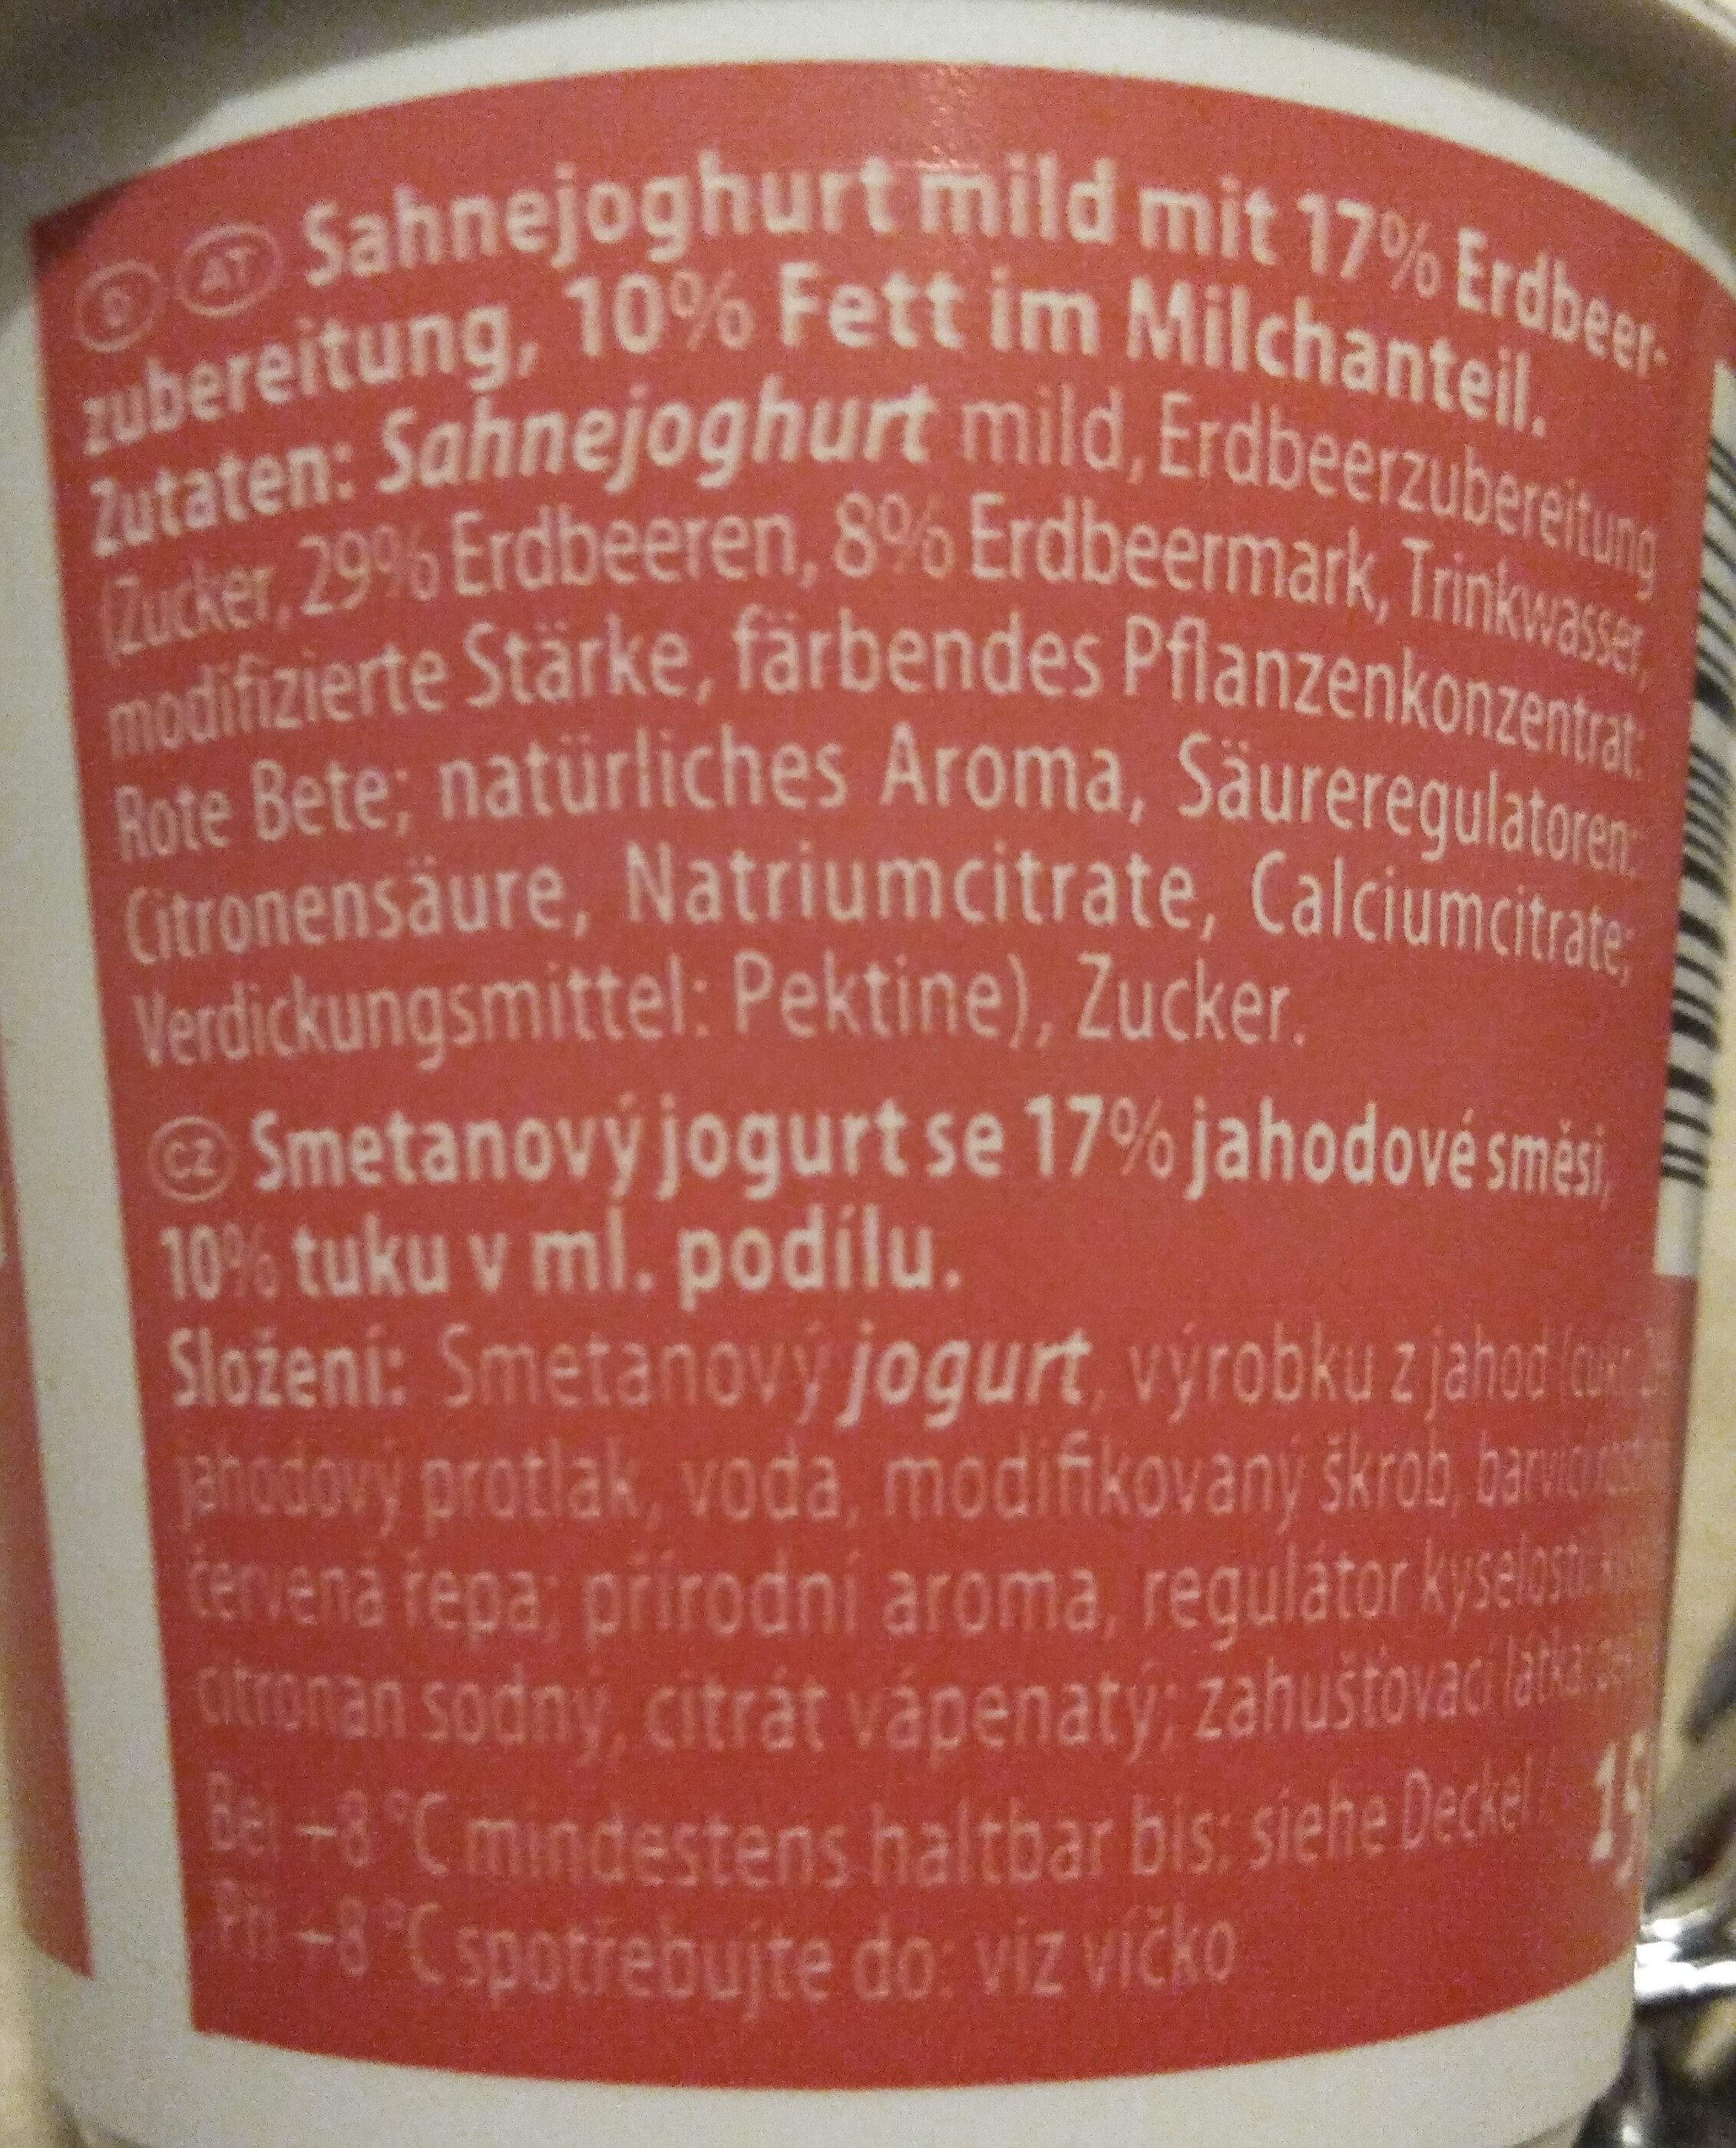 Sahnejoghurt. Erdbeere - Zutaten